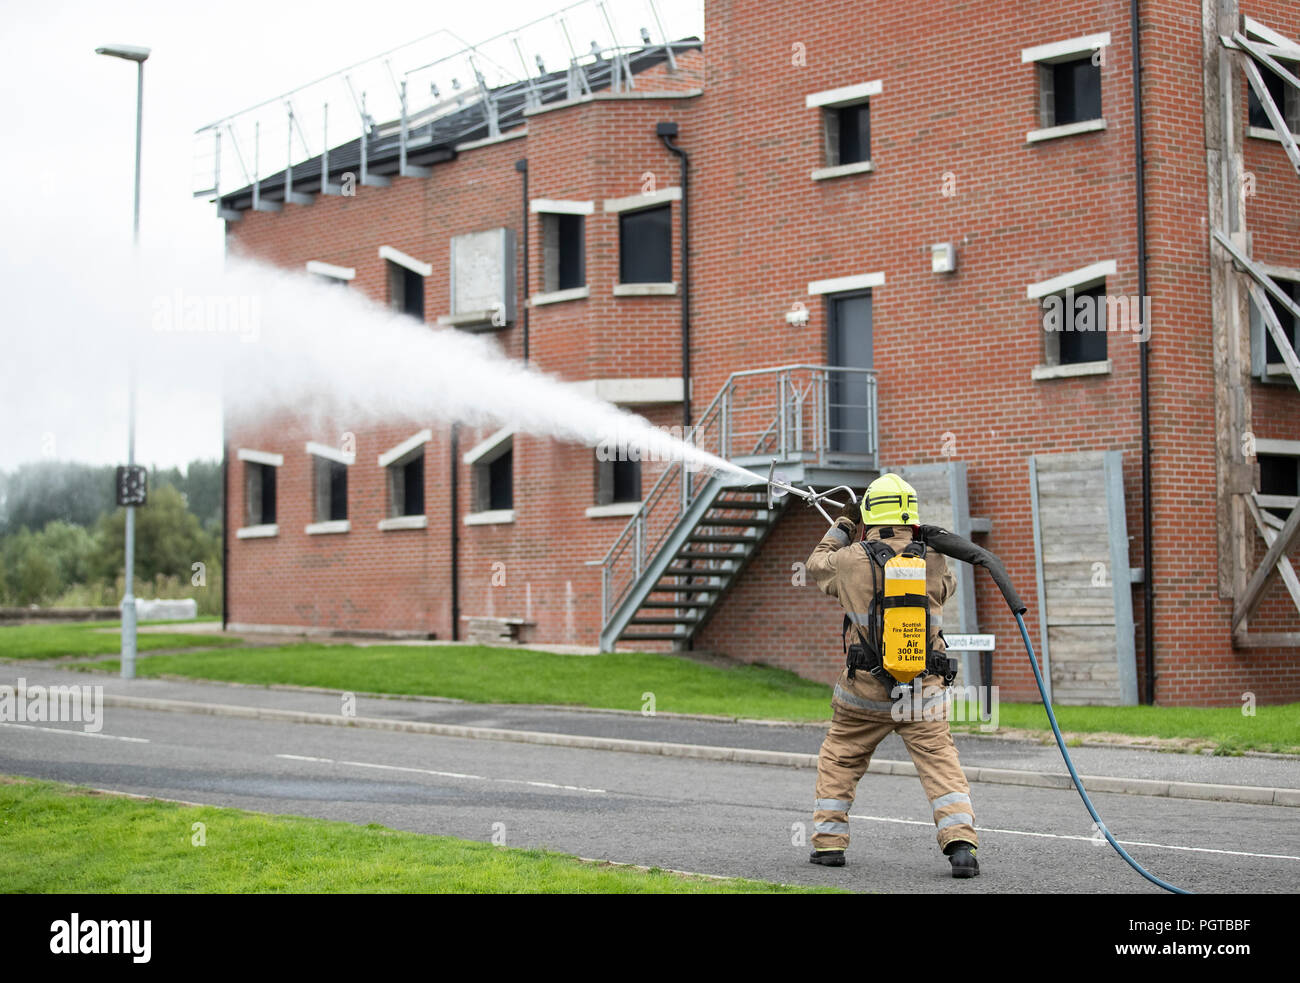 Les pompiers du Scottish Fire and Rescue Service, de leur centre national d'entraînement de Glasgow, font la démonstration de lances à pression ultra-élevée, portant la marque « Coldcut Cobra », qui permettront aux pompiers de souffler un extincteur à travers le mur d'un bâtiment en feu. Banque D'Images